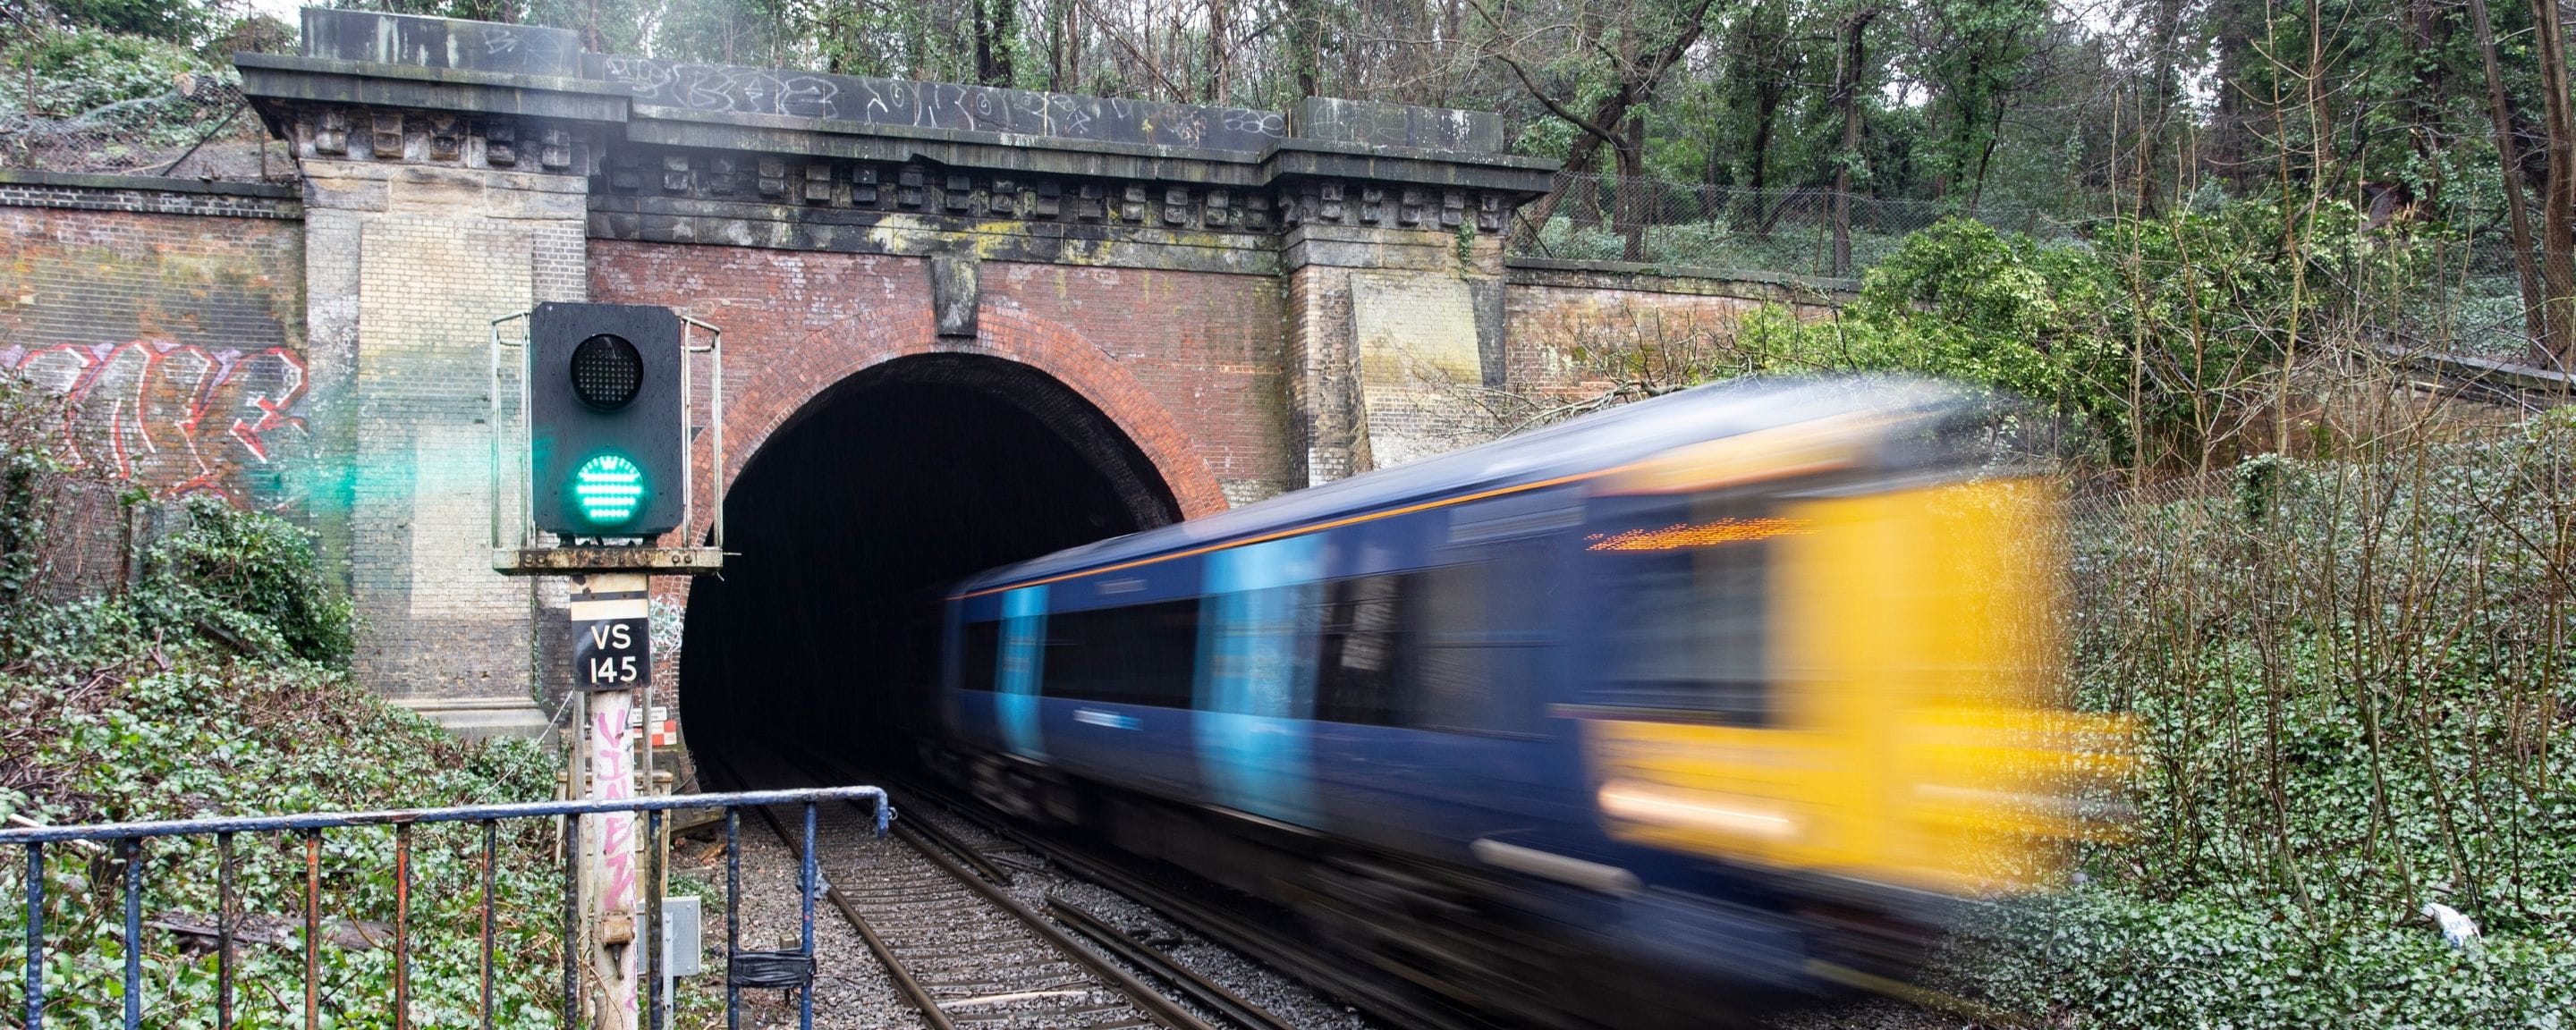 a train speeding through a tunnel